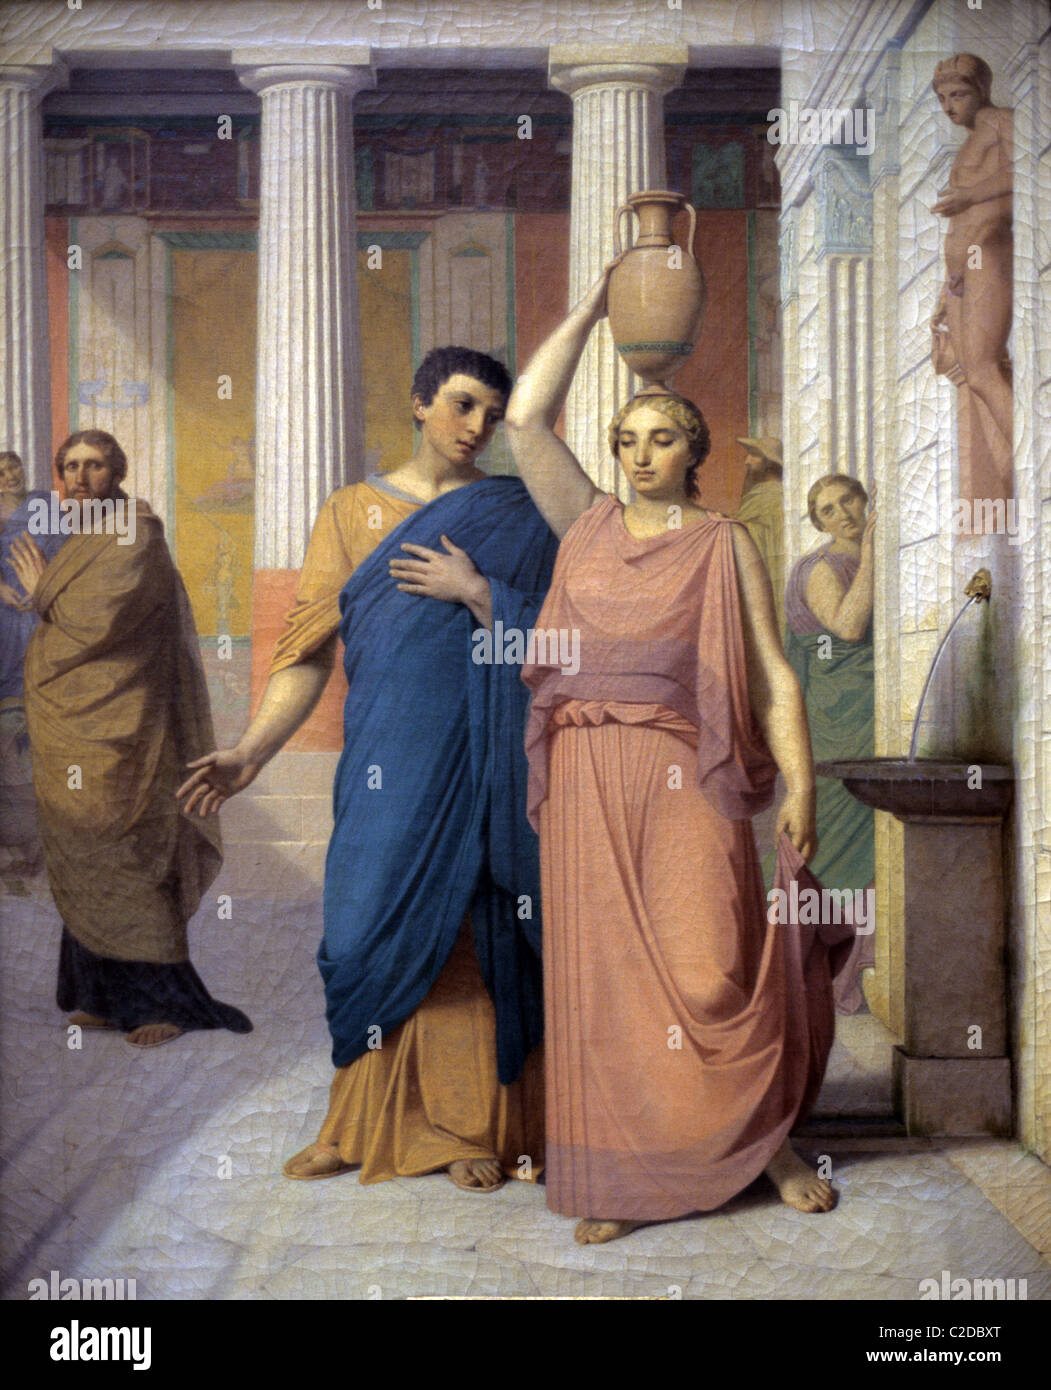 Alltag im antiken Rom oder häusliche Szene, Römer tragen Toga in Villa Romana c19th Gemälde von Jacques Pilliard Stockfoto